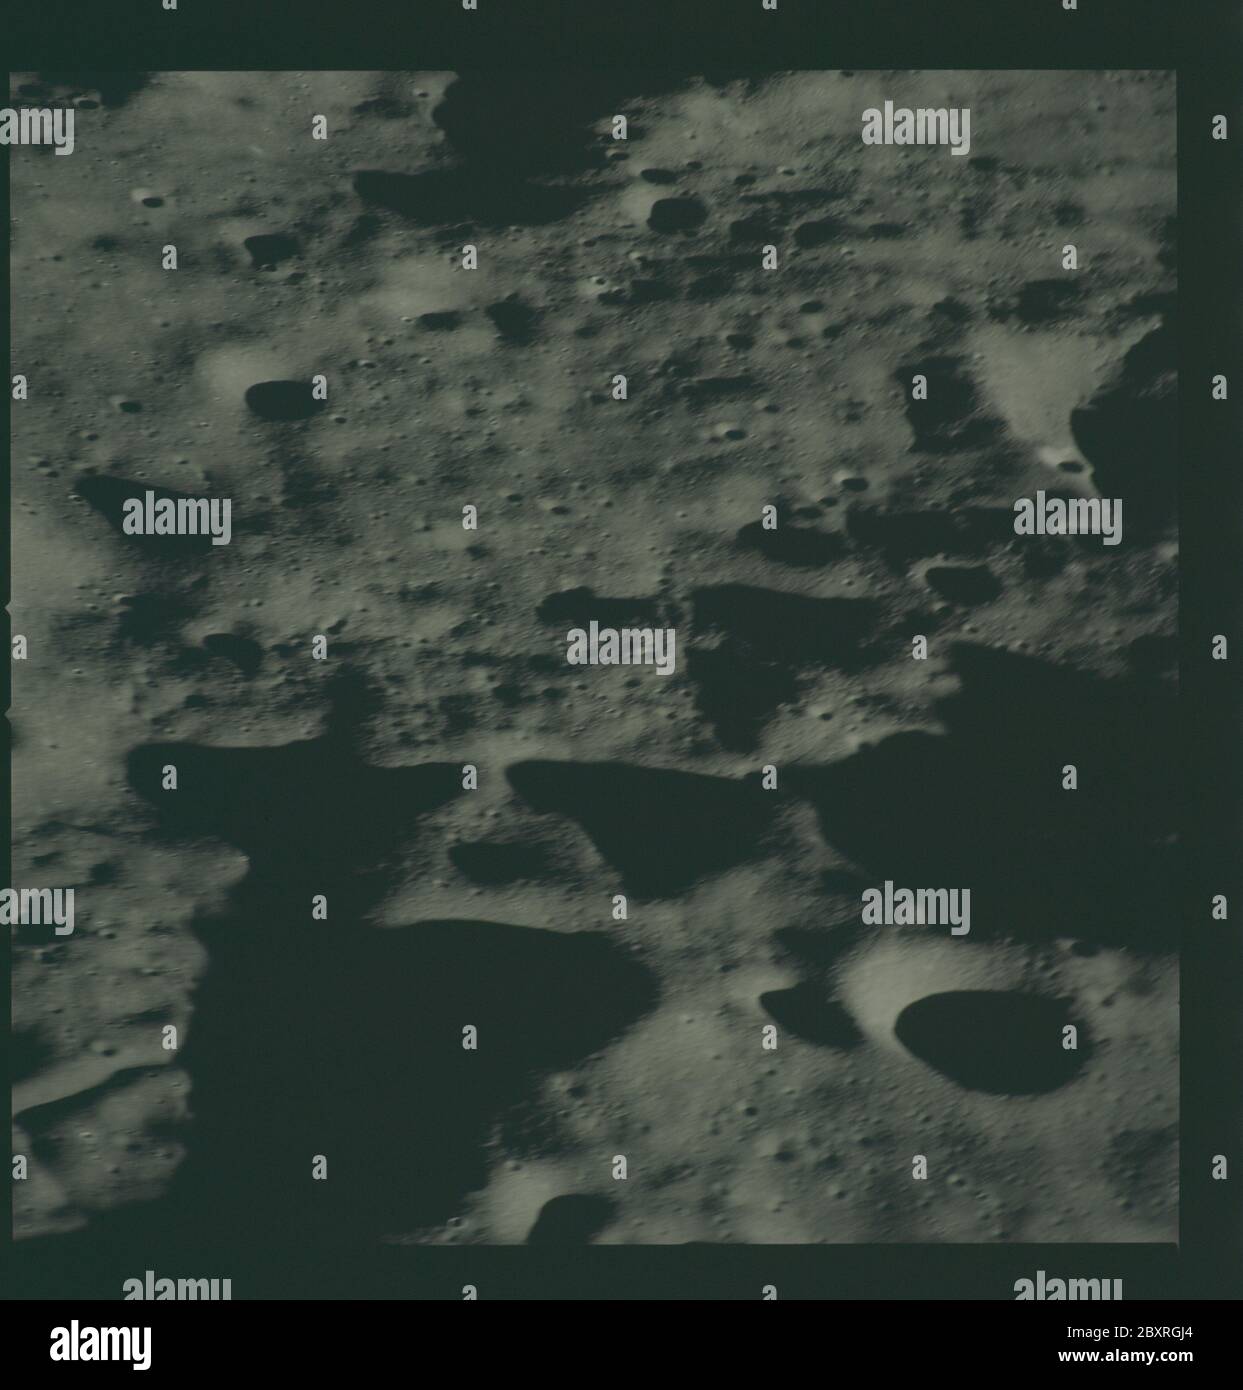 AS14-72-9955 - Apollo 14 - immagine della missione Apollo 14 - Vista a sud-est da un punto ad ovest del cratere Chaplygin e ad est del cratere Vill'Ev.; scopo e contenuto: Il database originale descrive questo come: Descrizione: Vista a sud-est da un punto ad ovest del cratere Chaplygin e ad est del cratere Vill'Ev. Le immagini sono state scattate durante la Rivoluzione 14 della missione Apollo 14. Il caricatore di pellicola originale era etichettato L, il tipo di pellicola era CEX S0-368 (Ektachrome MS, inversione di colore), lente da 500 mm con un'elevazione del sole di 7 gradi. La scala approssimativa della foto è 1:1,360,000. Principal Point Latitude era 5.5S Foto Stock